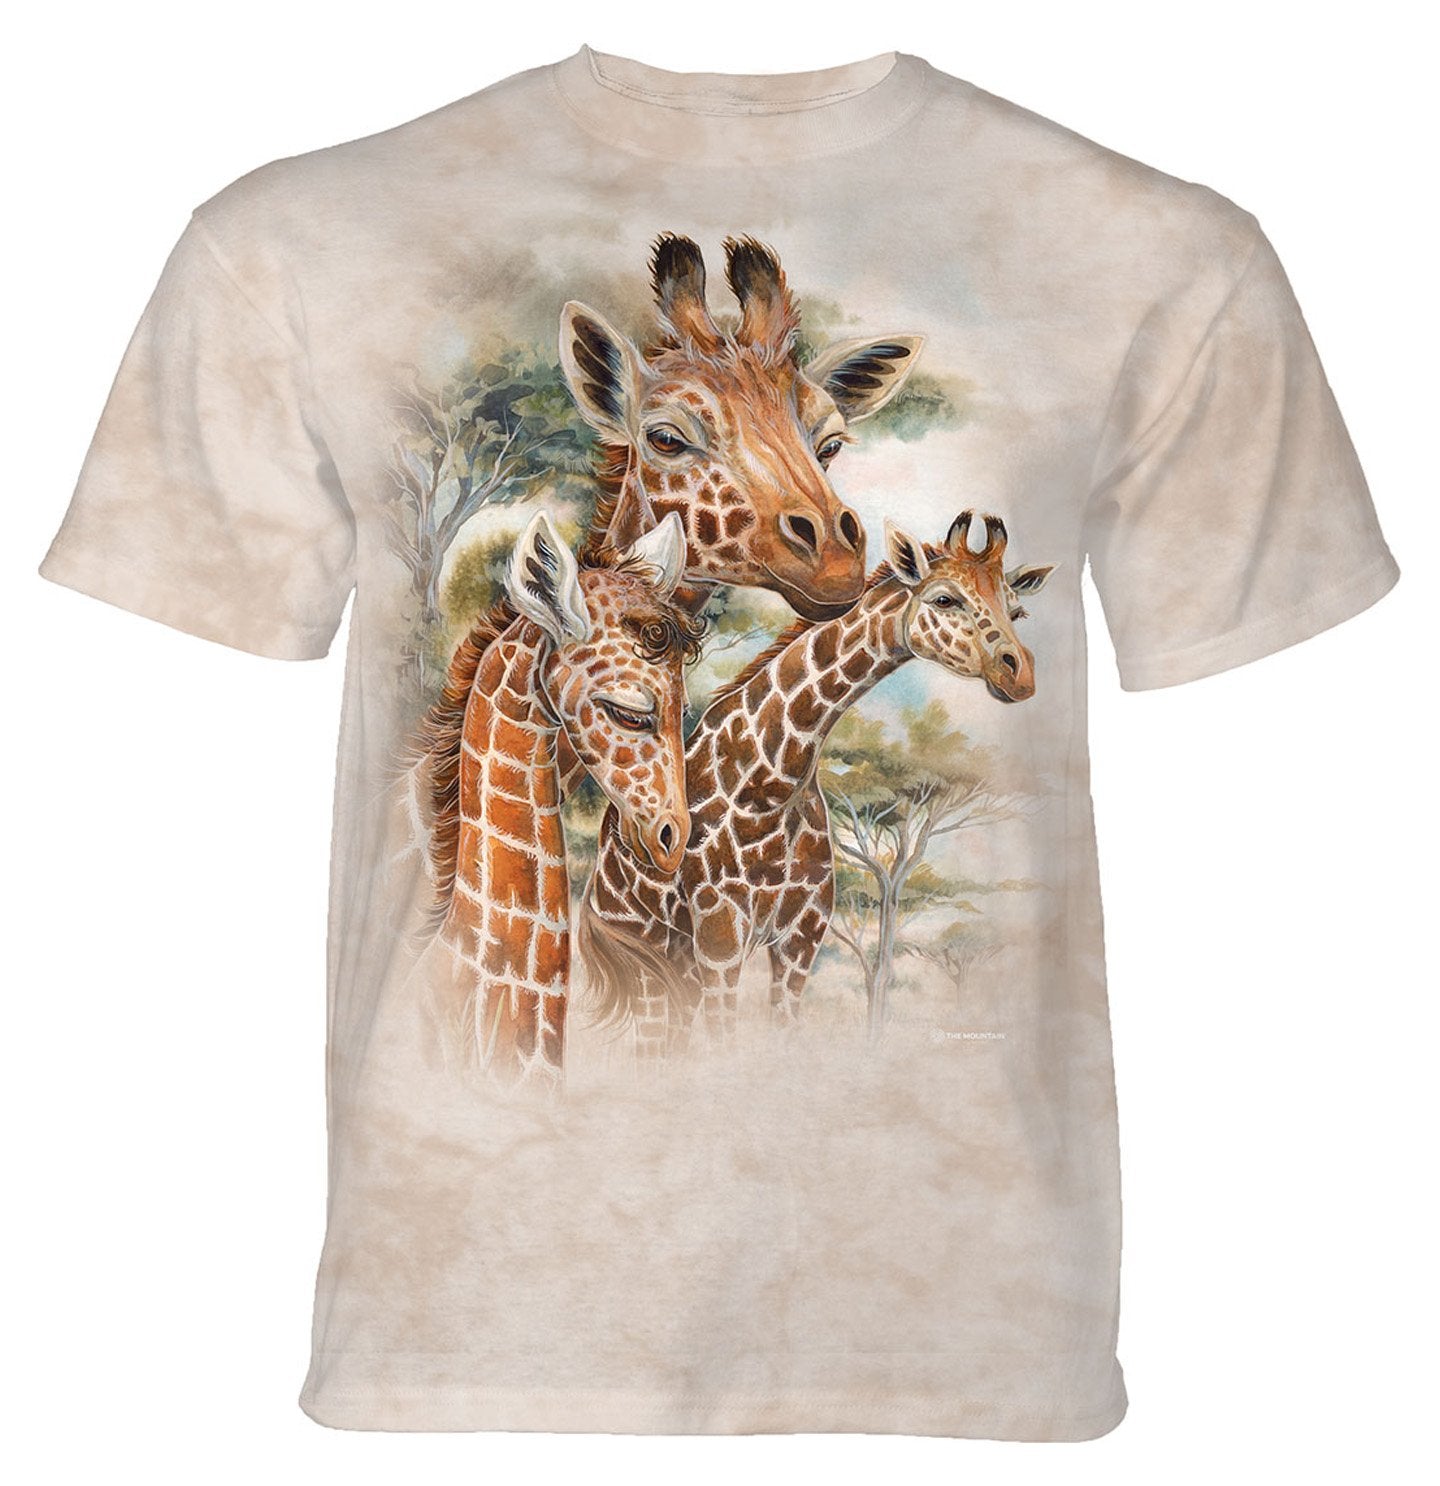 The Mountain - Giraffes - Adult Unisex T-Shirt